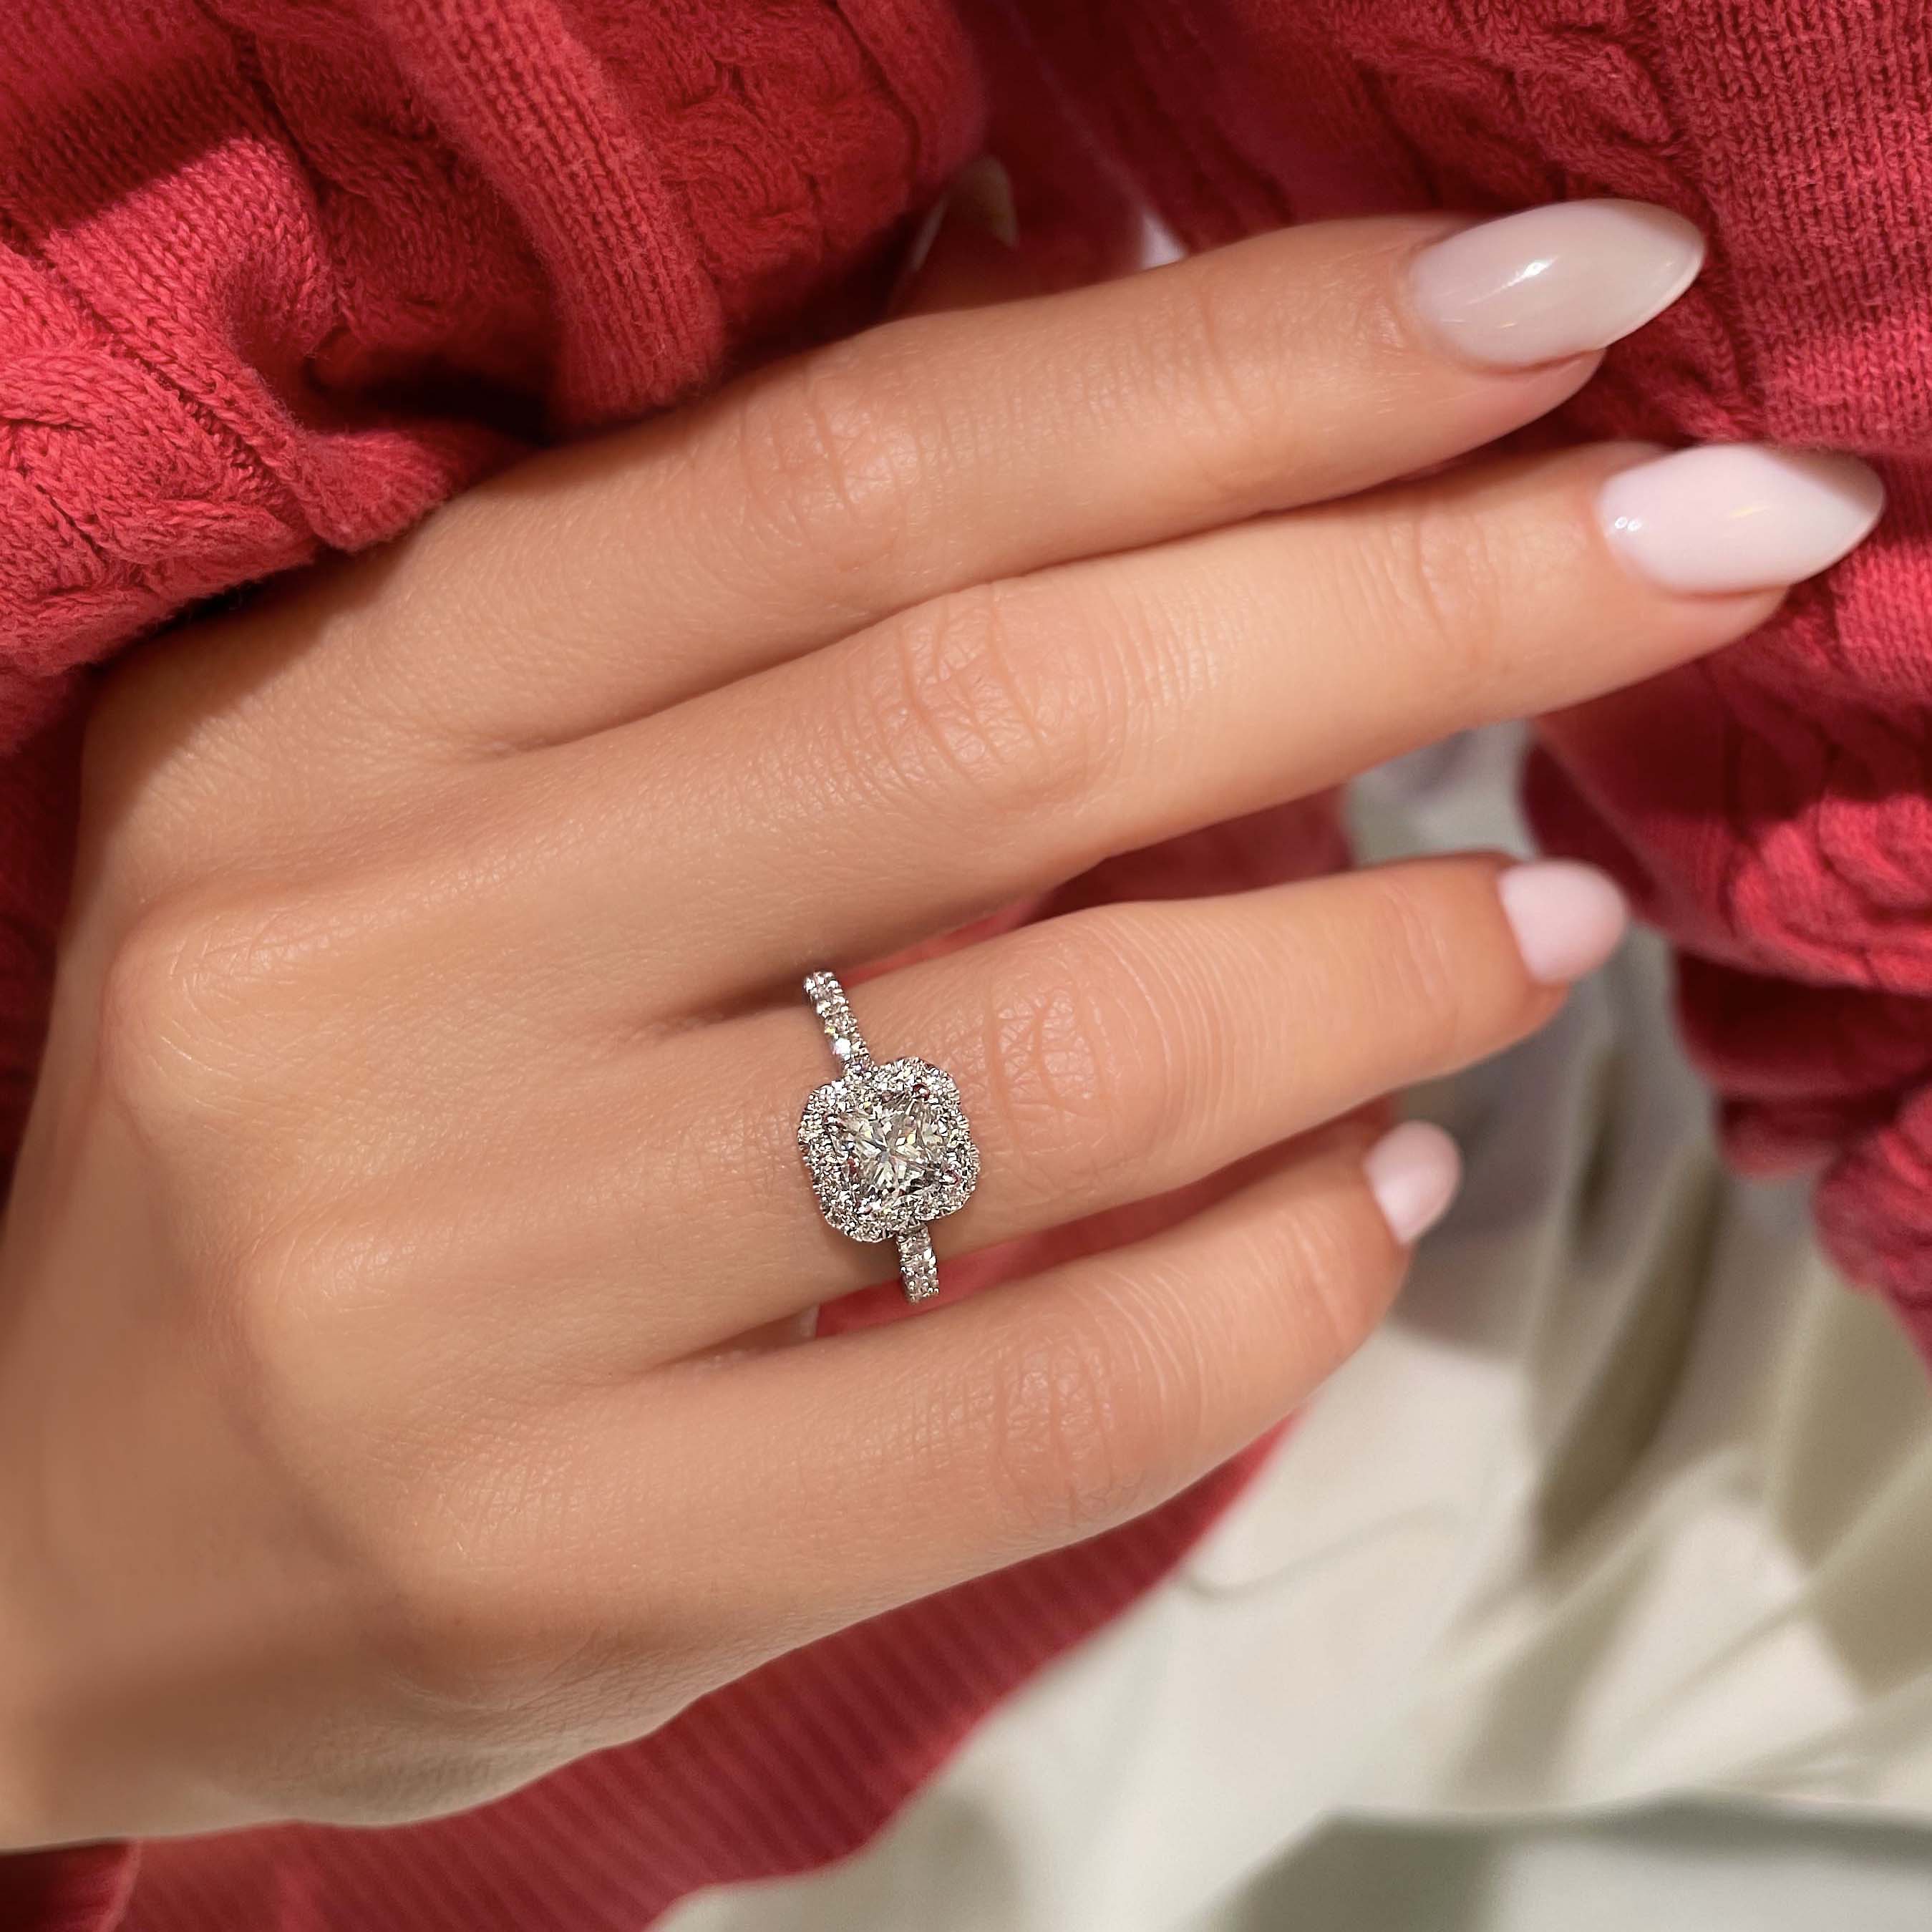 Cora Diamond Engagement Ring   (1.35 Carat) -14K White Gold